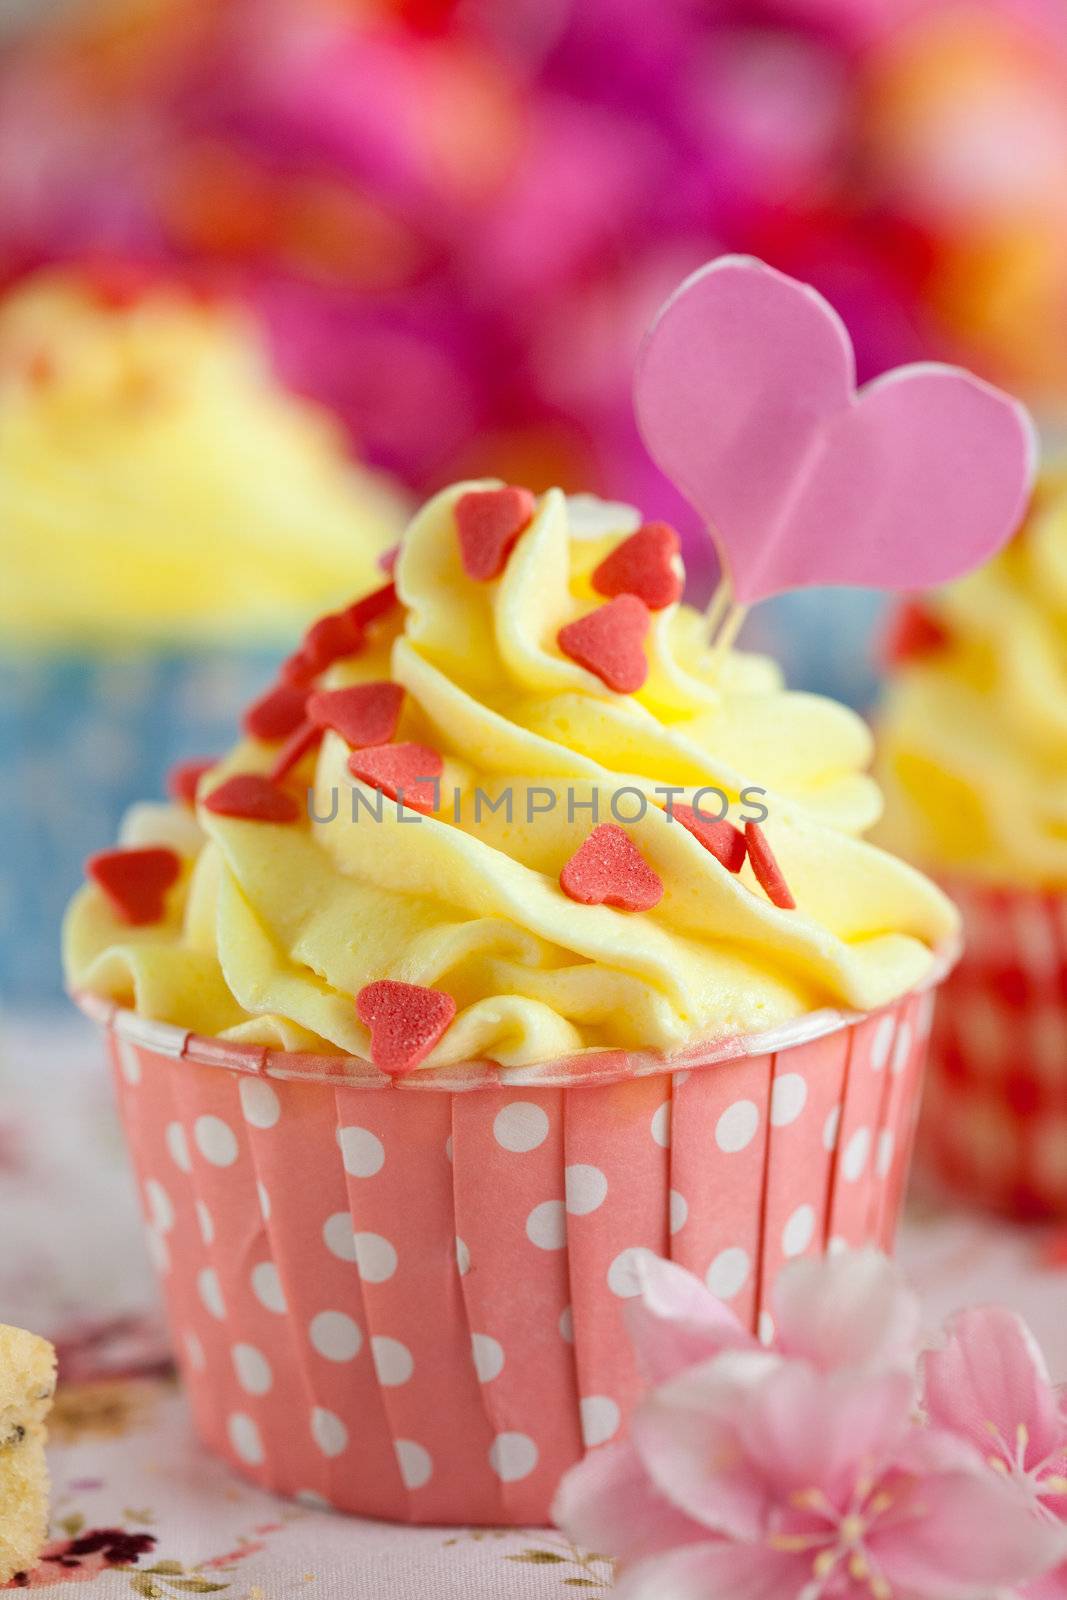 Valentine cupcake by Fotosmurf